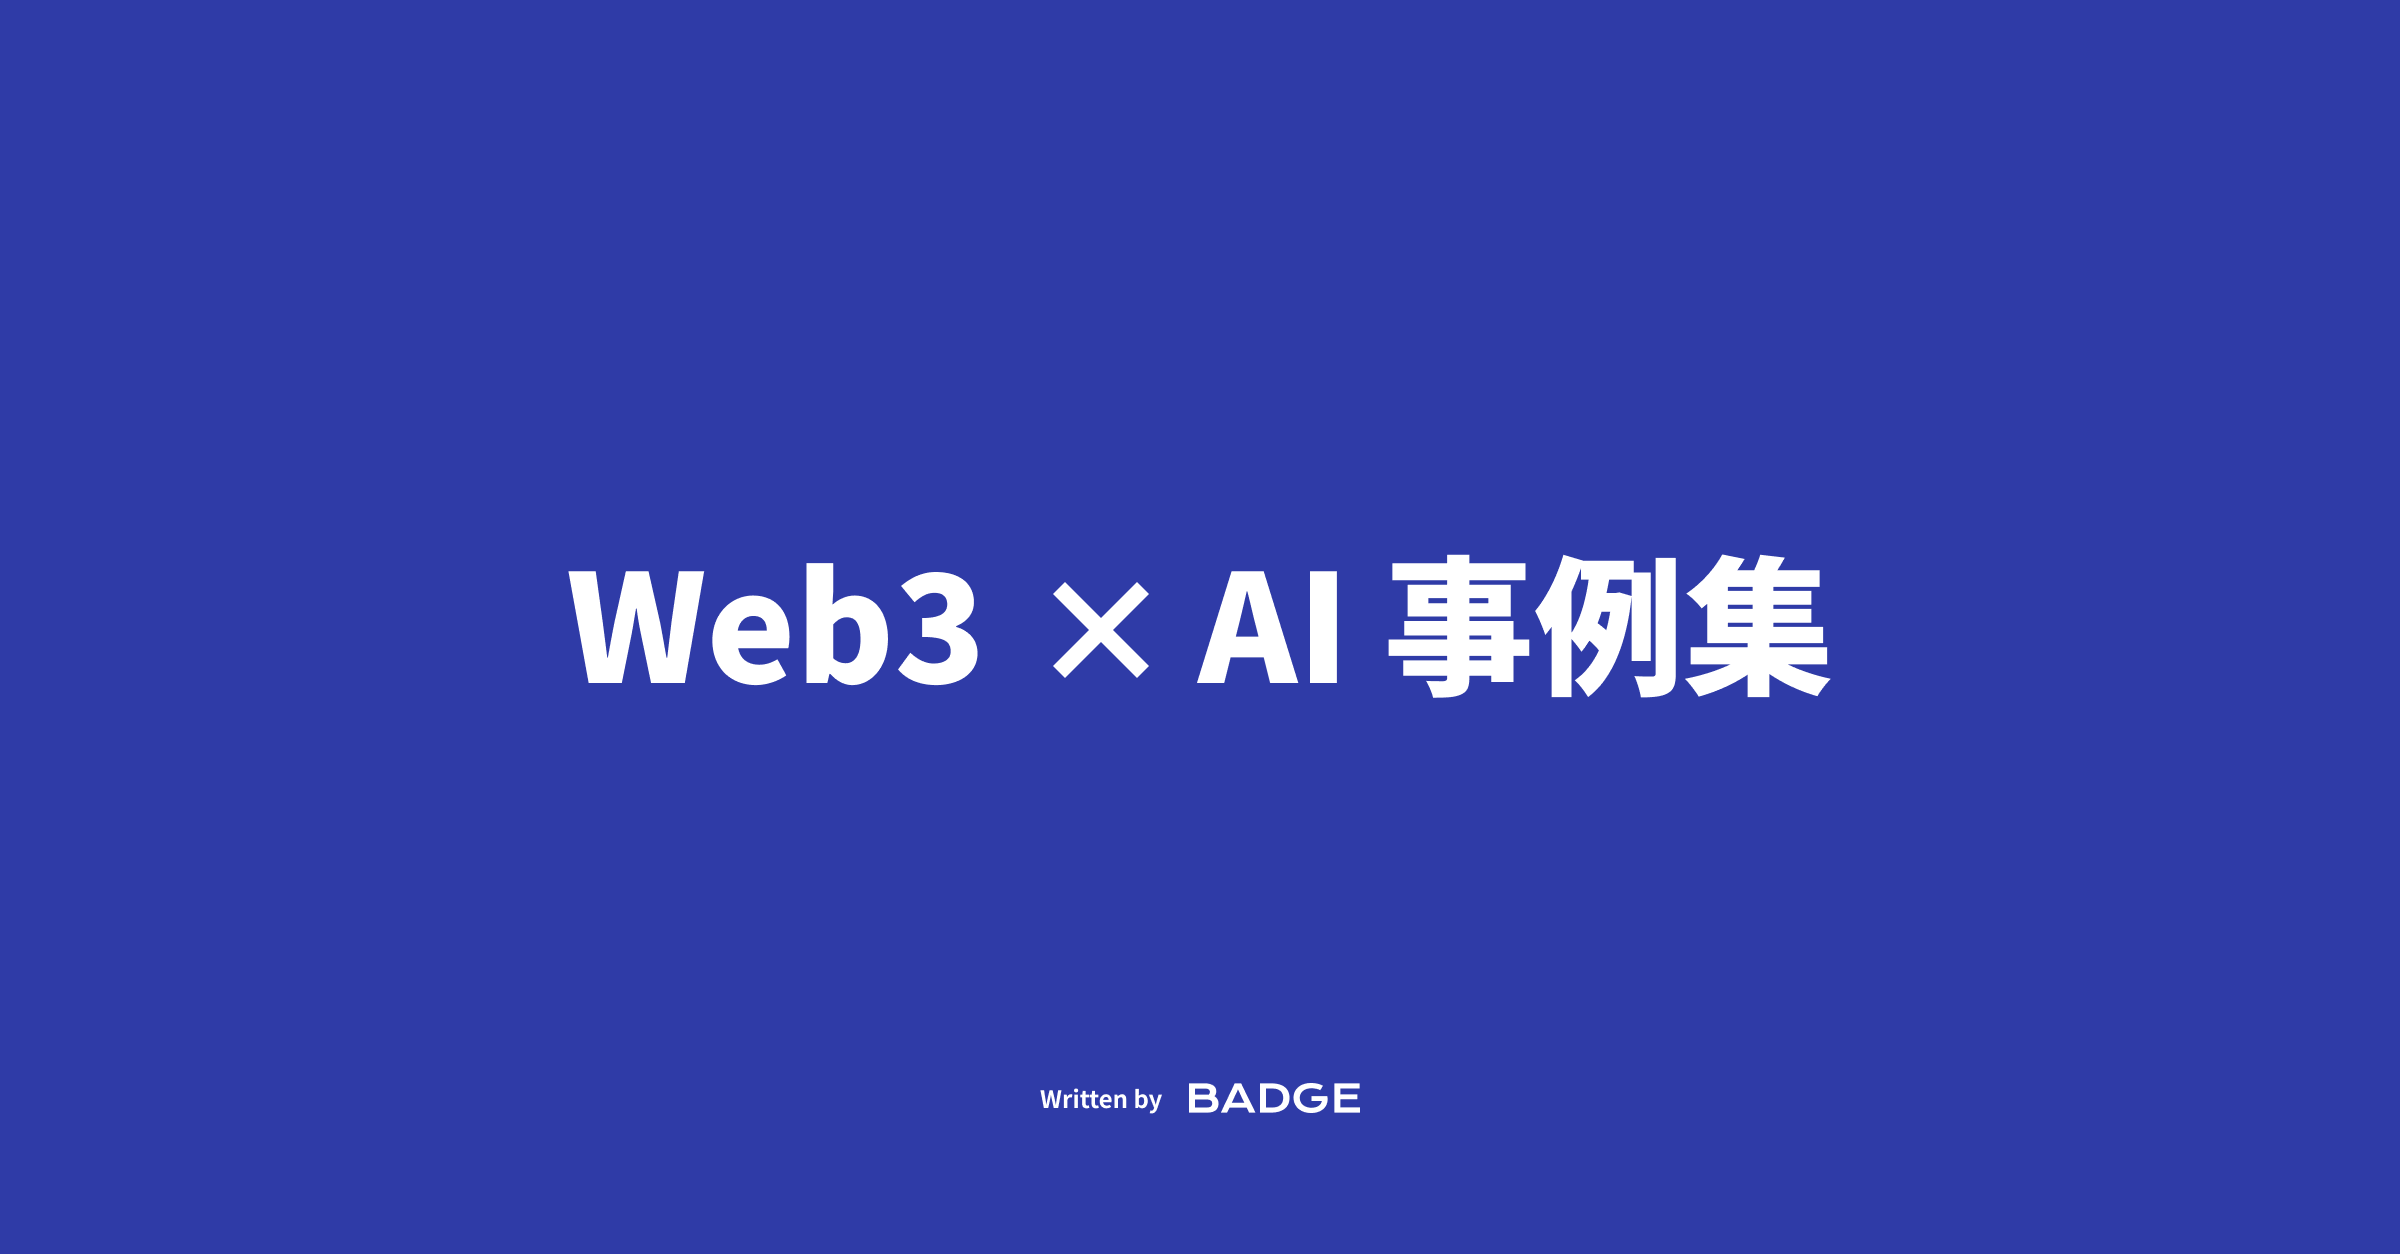 AI x Web3 事例集